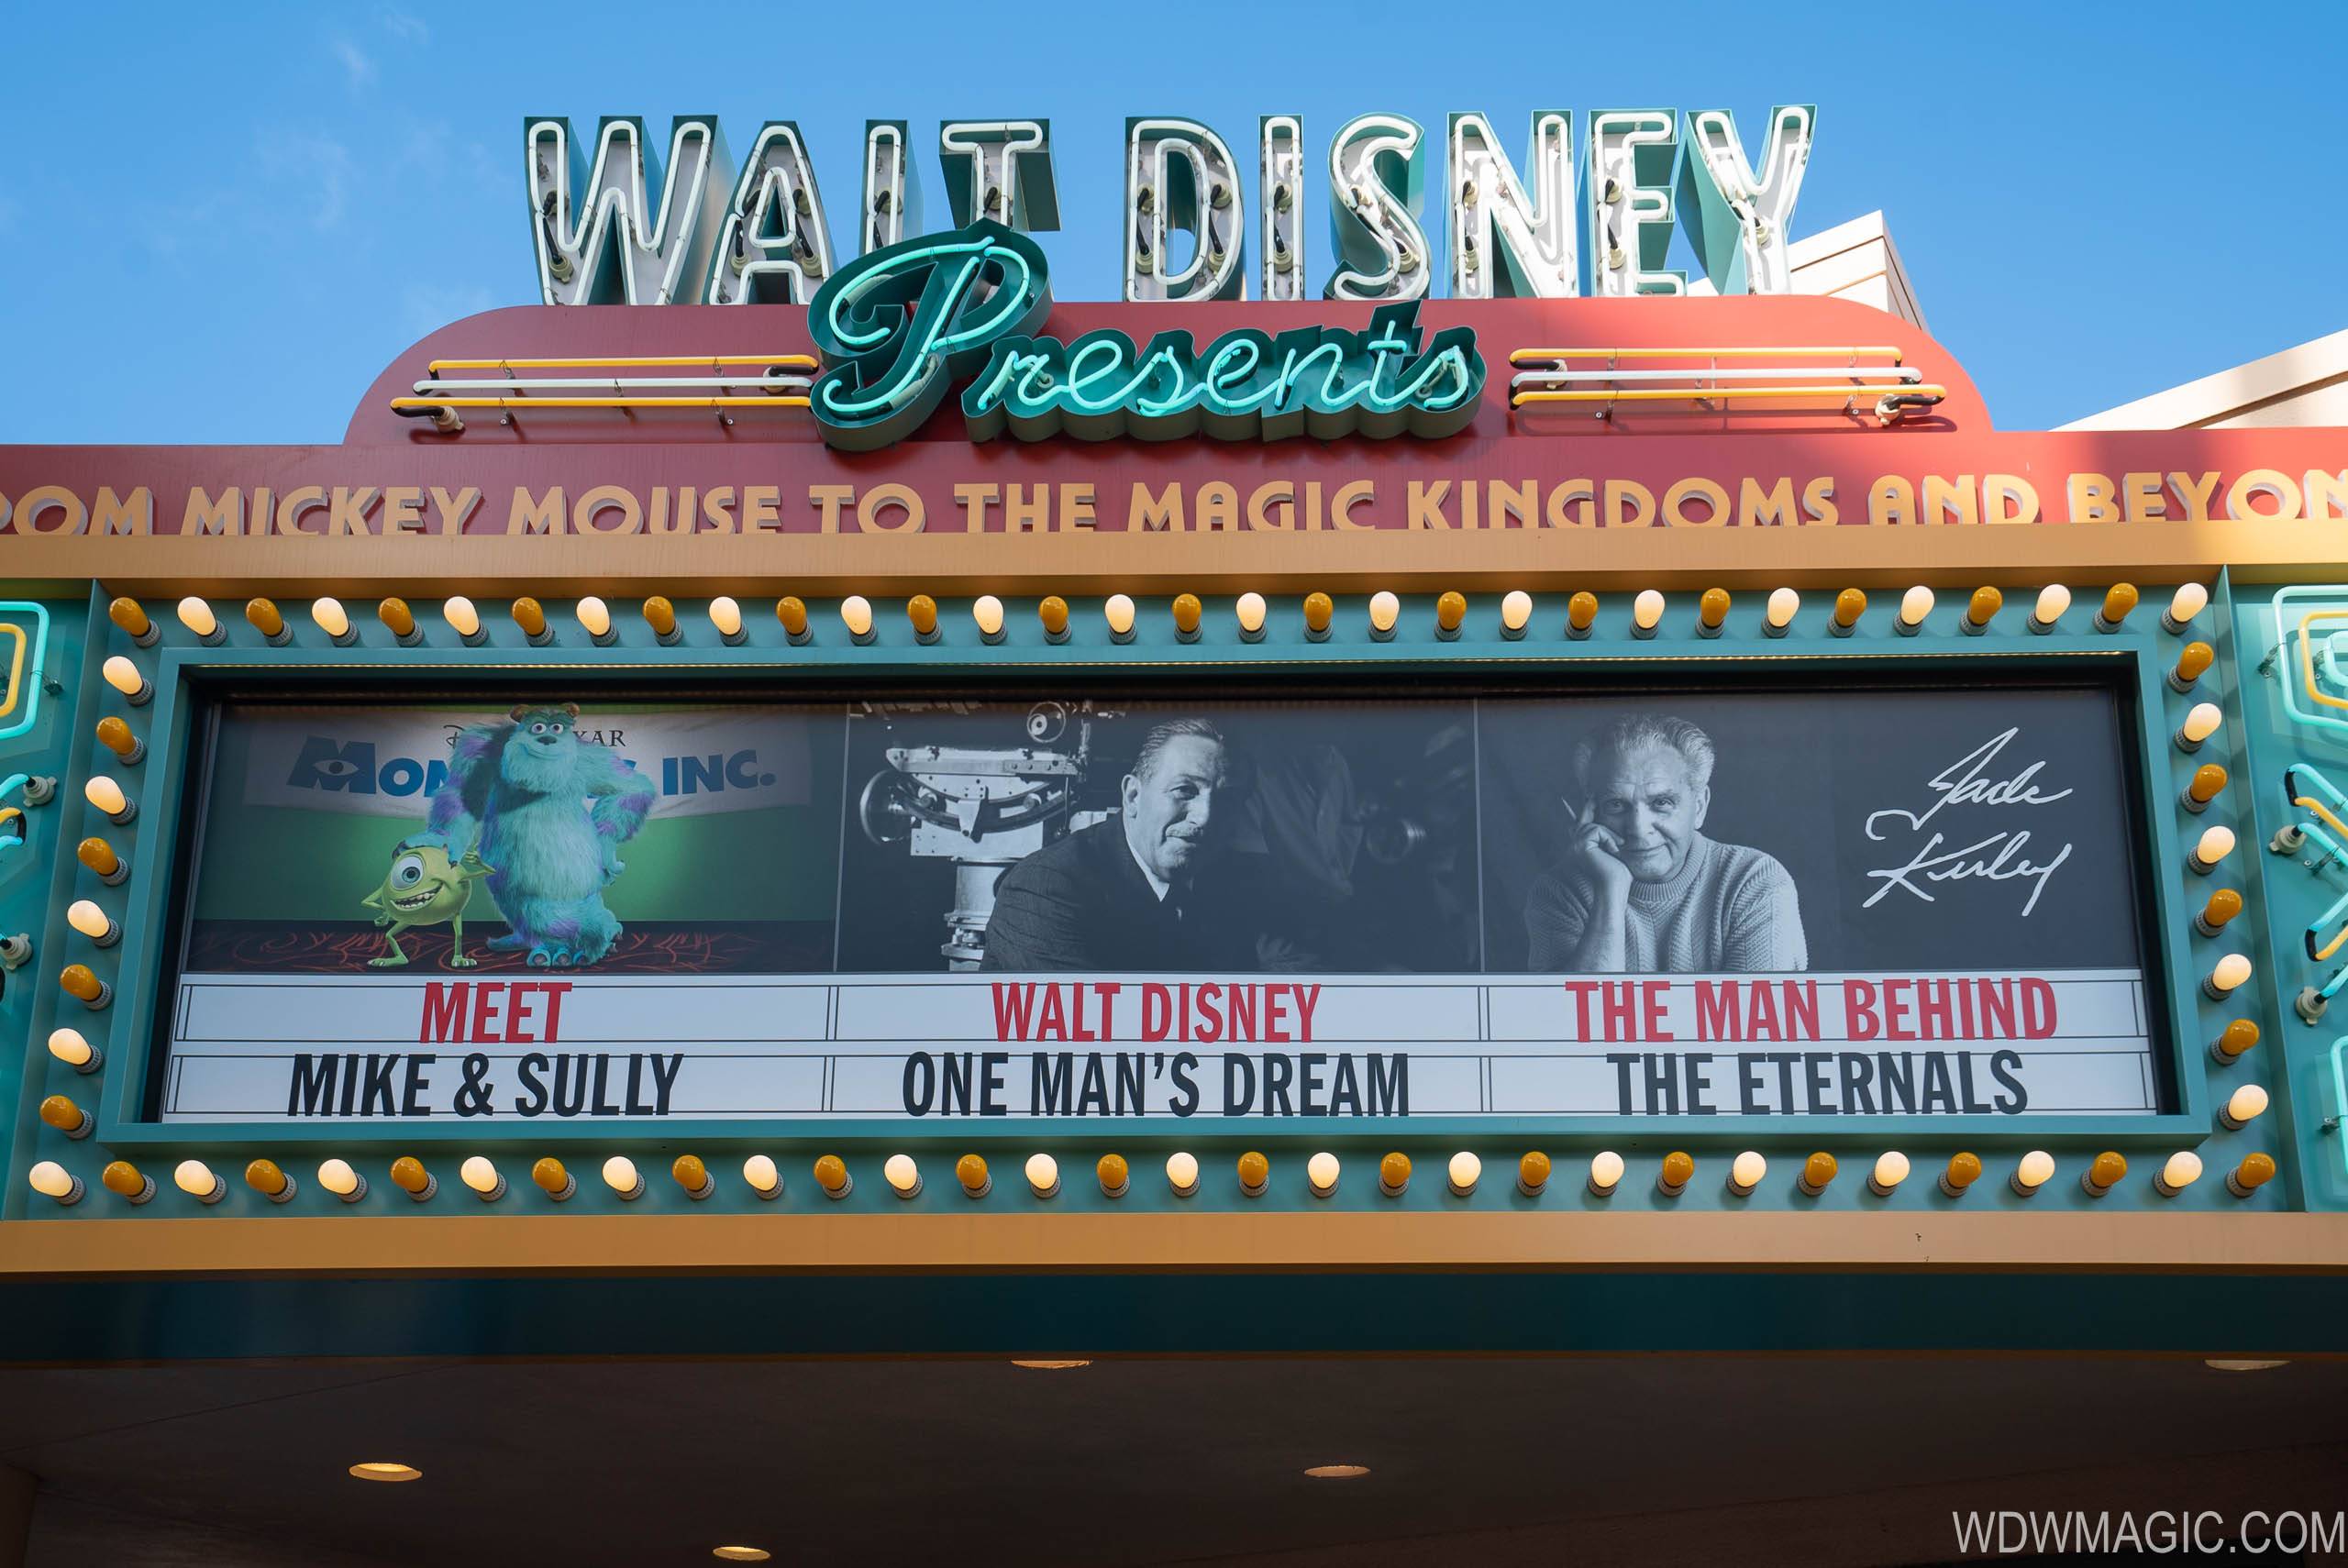 Walt Disney Presents - Jack Kirby's Cosmic Series Experience